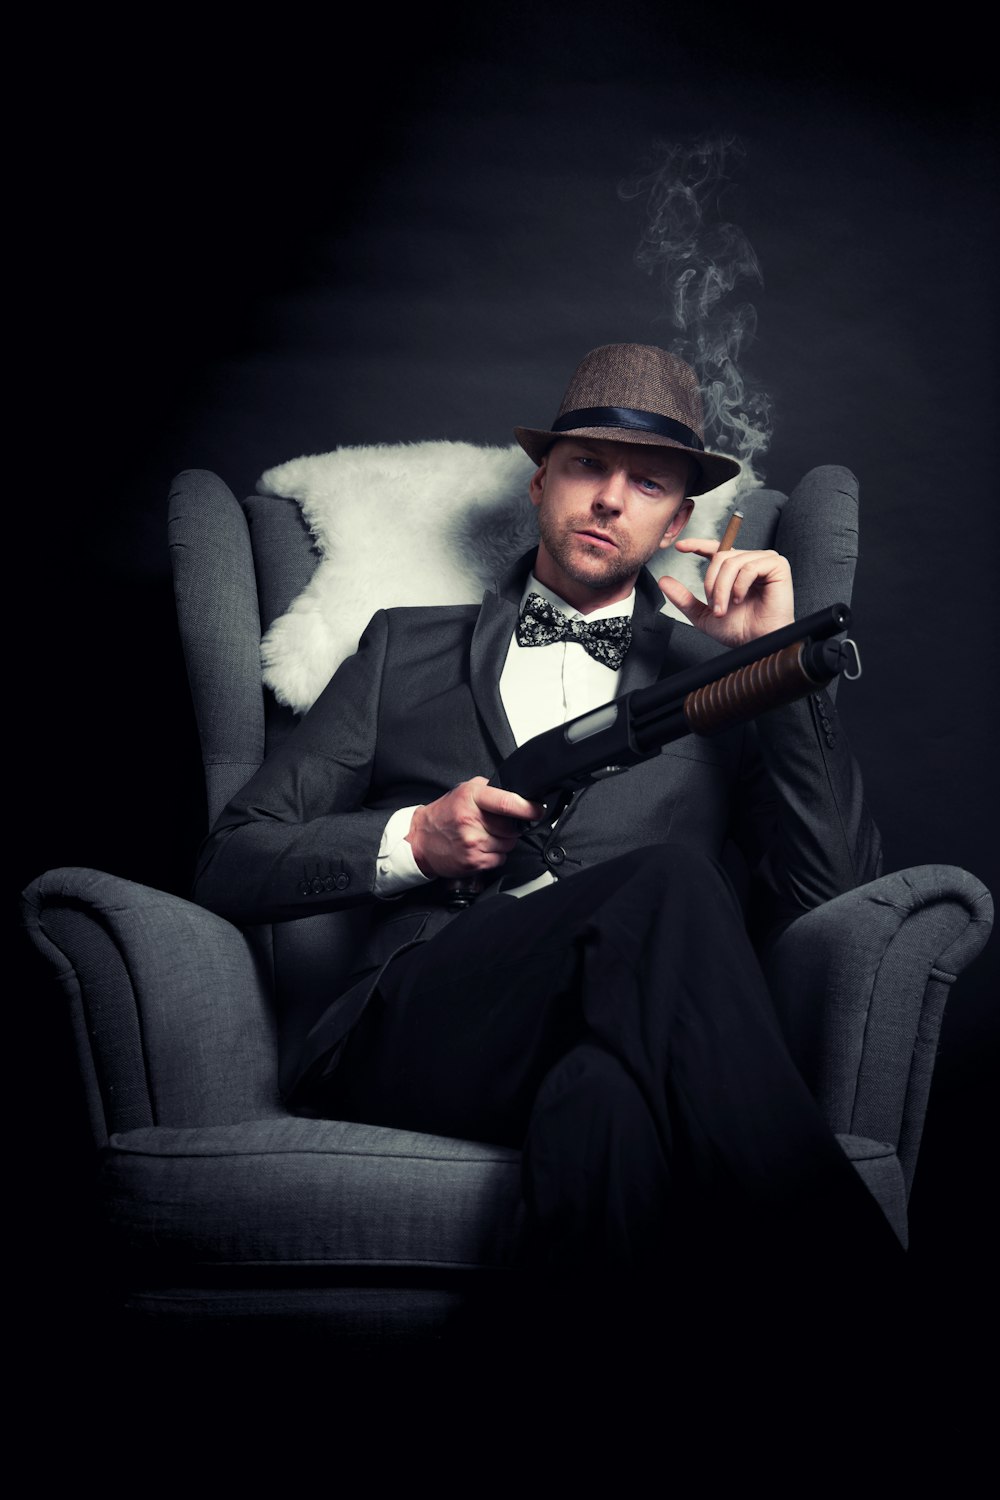 a man in a tuxedo smoking a cigarette